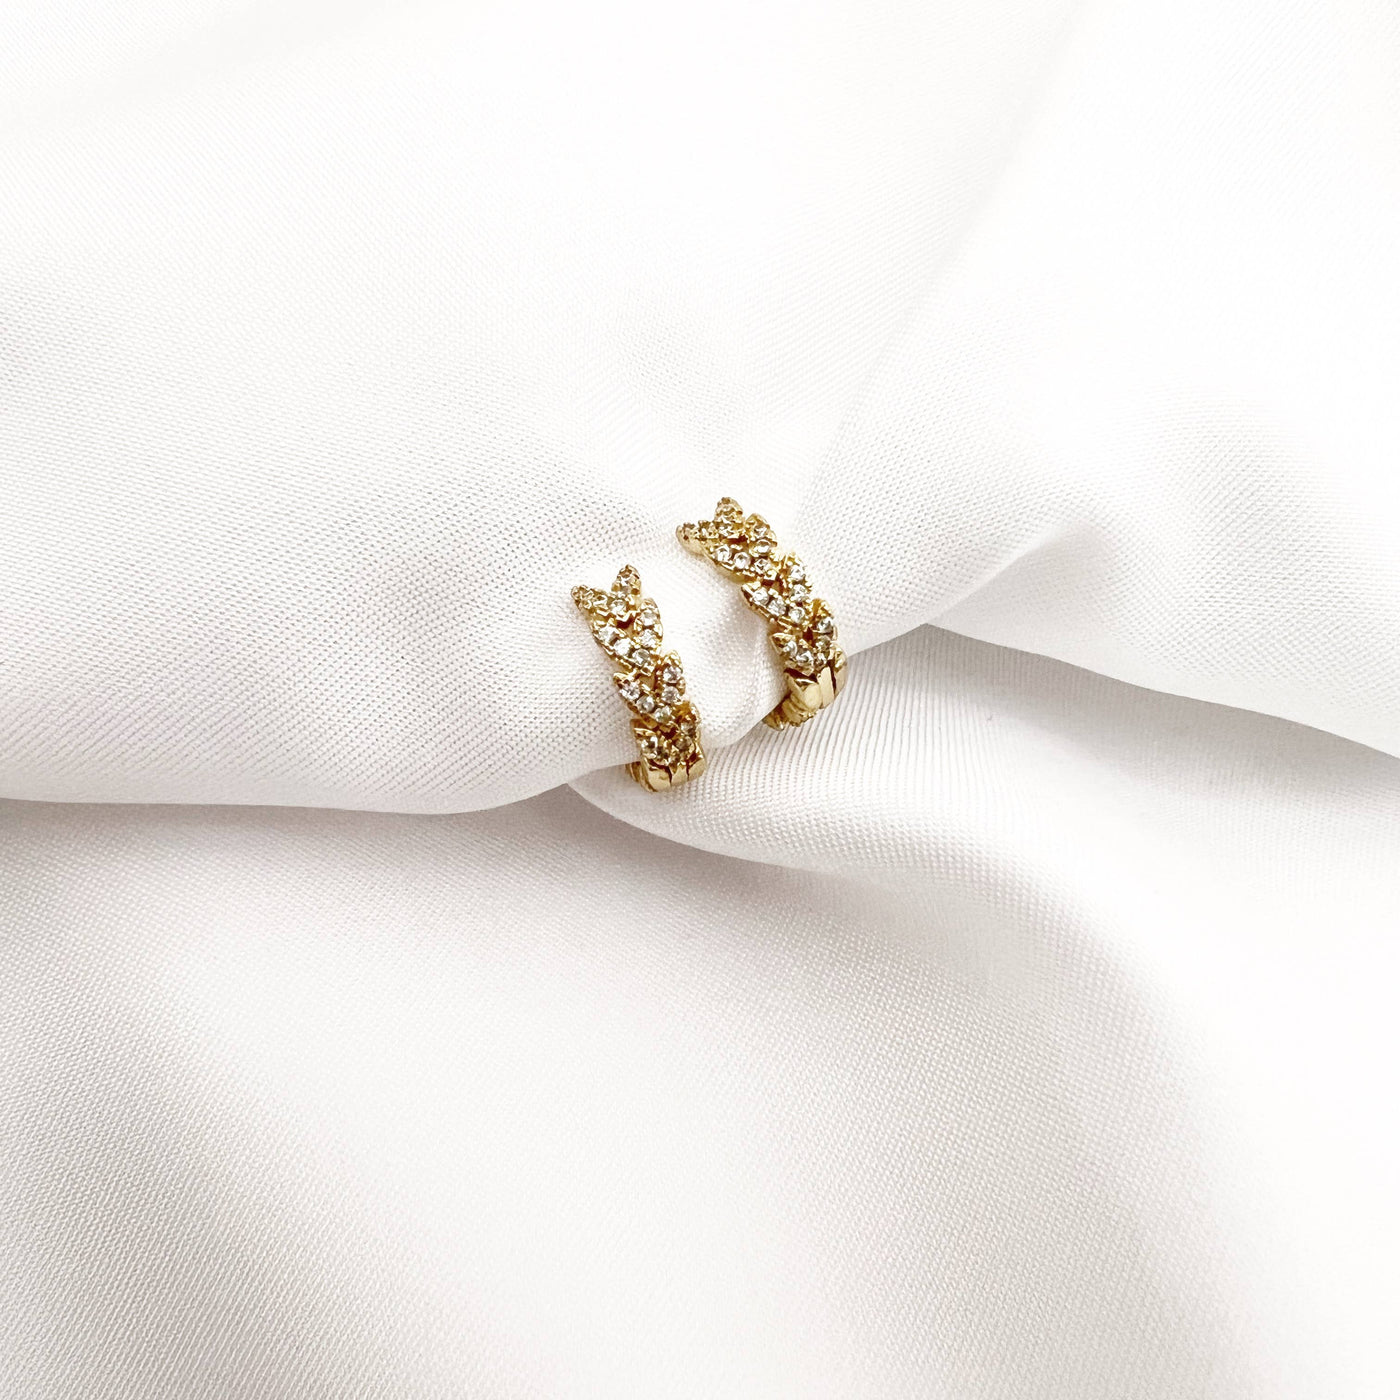 true by kristy jewelry - Laurel Pave Huggie Hoops Earrings Gold Filled